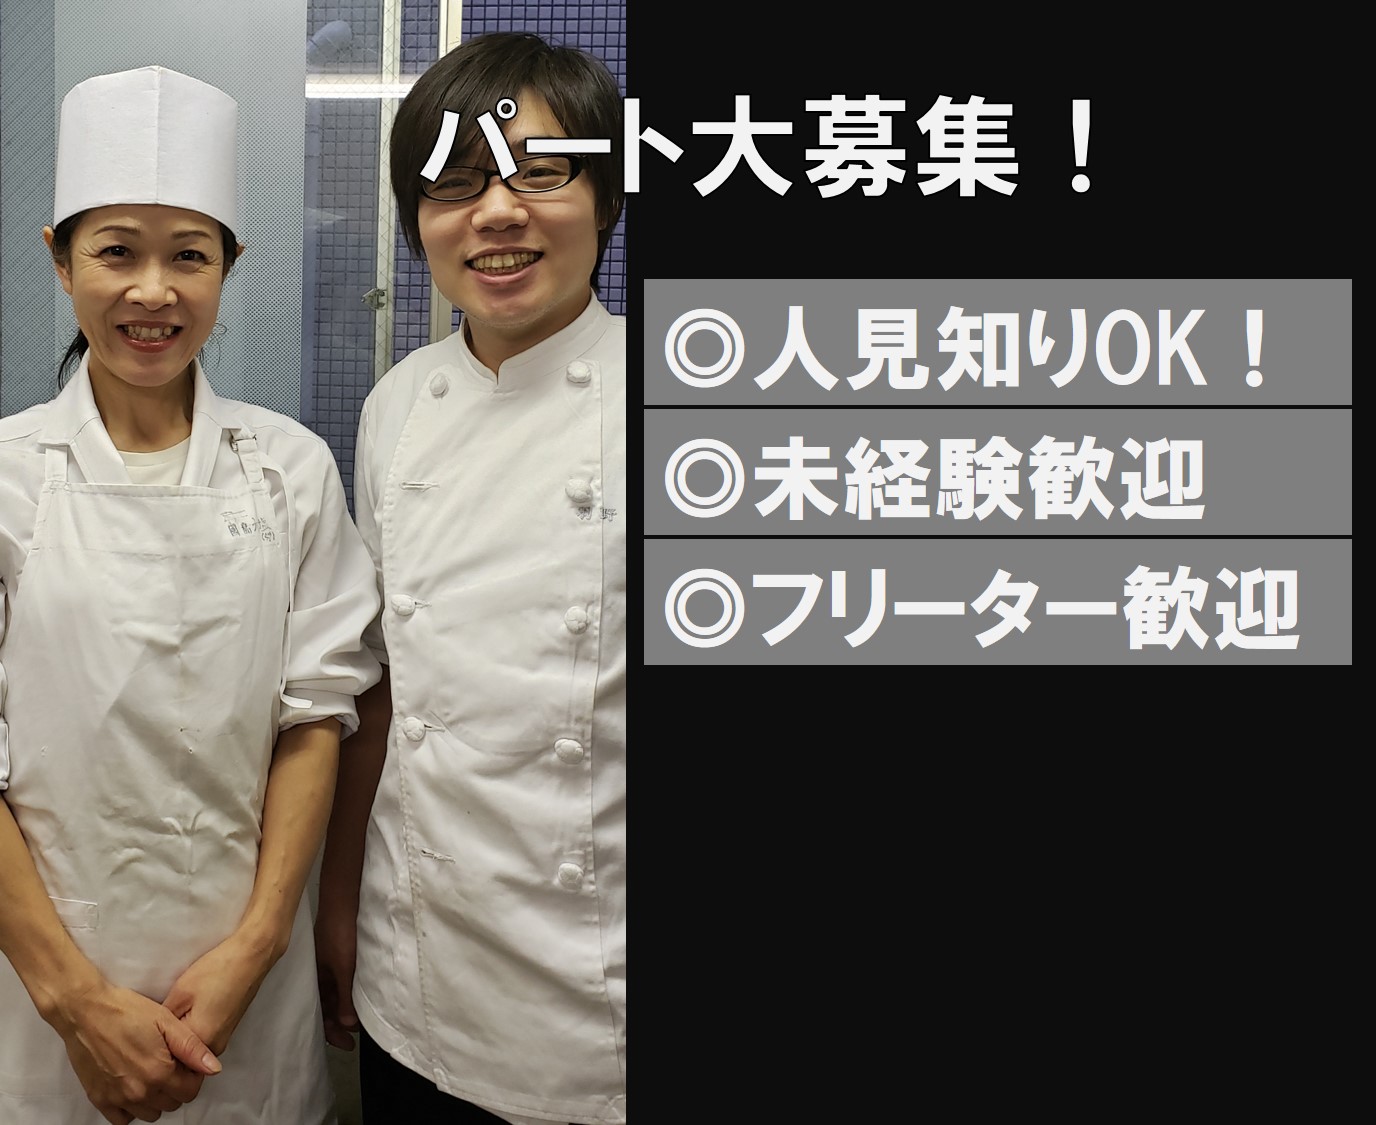 言われたことをやるのが得意という人を募集しています 京都市内セントラルキッチンの仕込みスタッフ スター株式会社 求人サイト